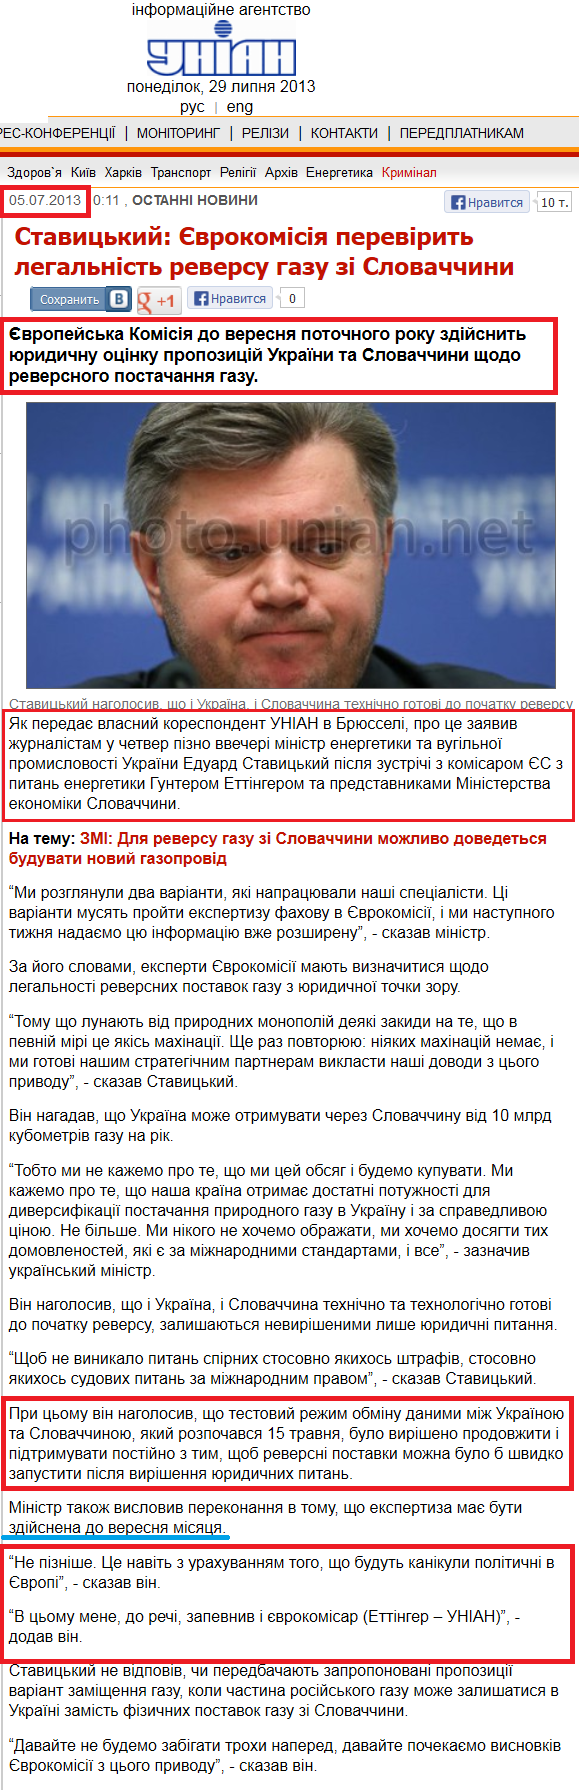 http://www.unian.ua/news/581629-stavitskiy-evrokomisiya-perevirit-legalnist-reversu-gazu-zi-slovachchini.html